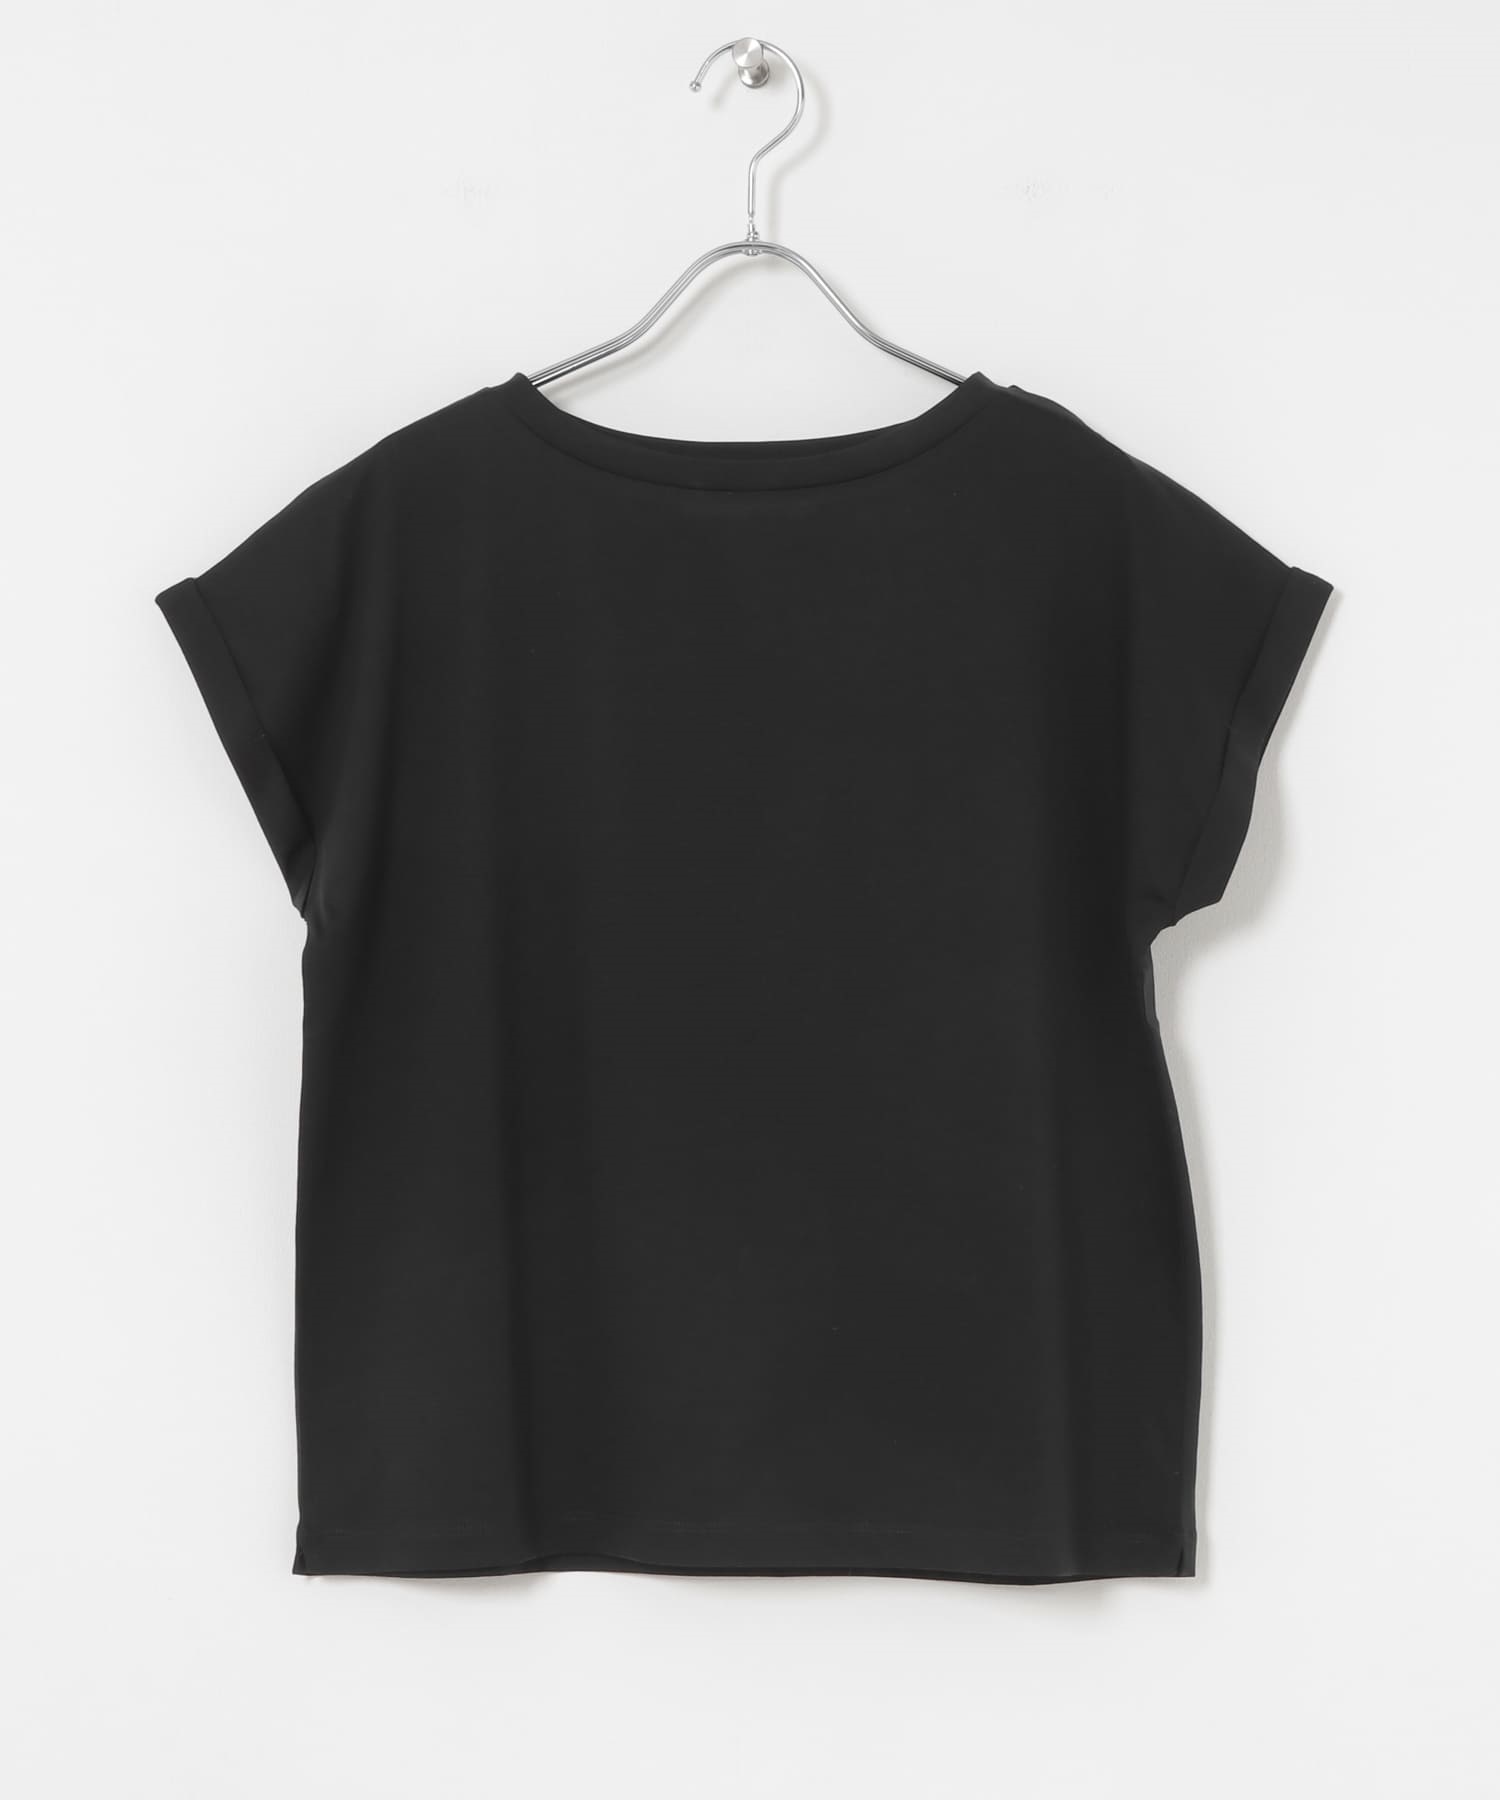 皮馬棉T恤(黑色-FREE-BLACK)